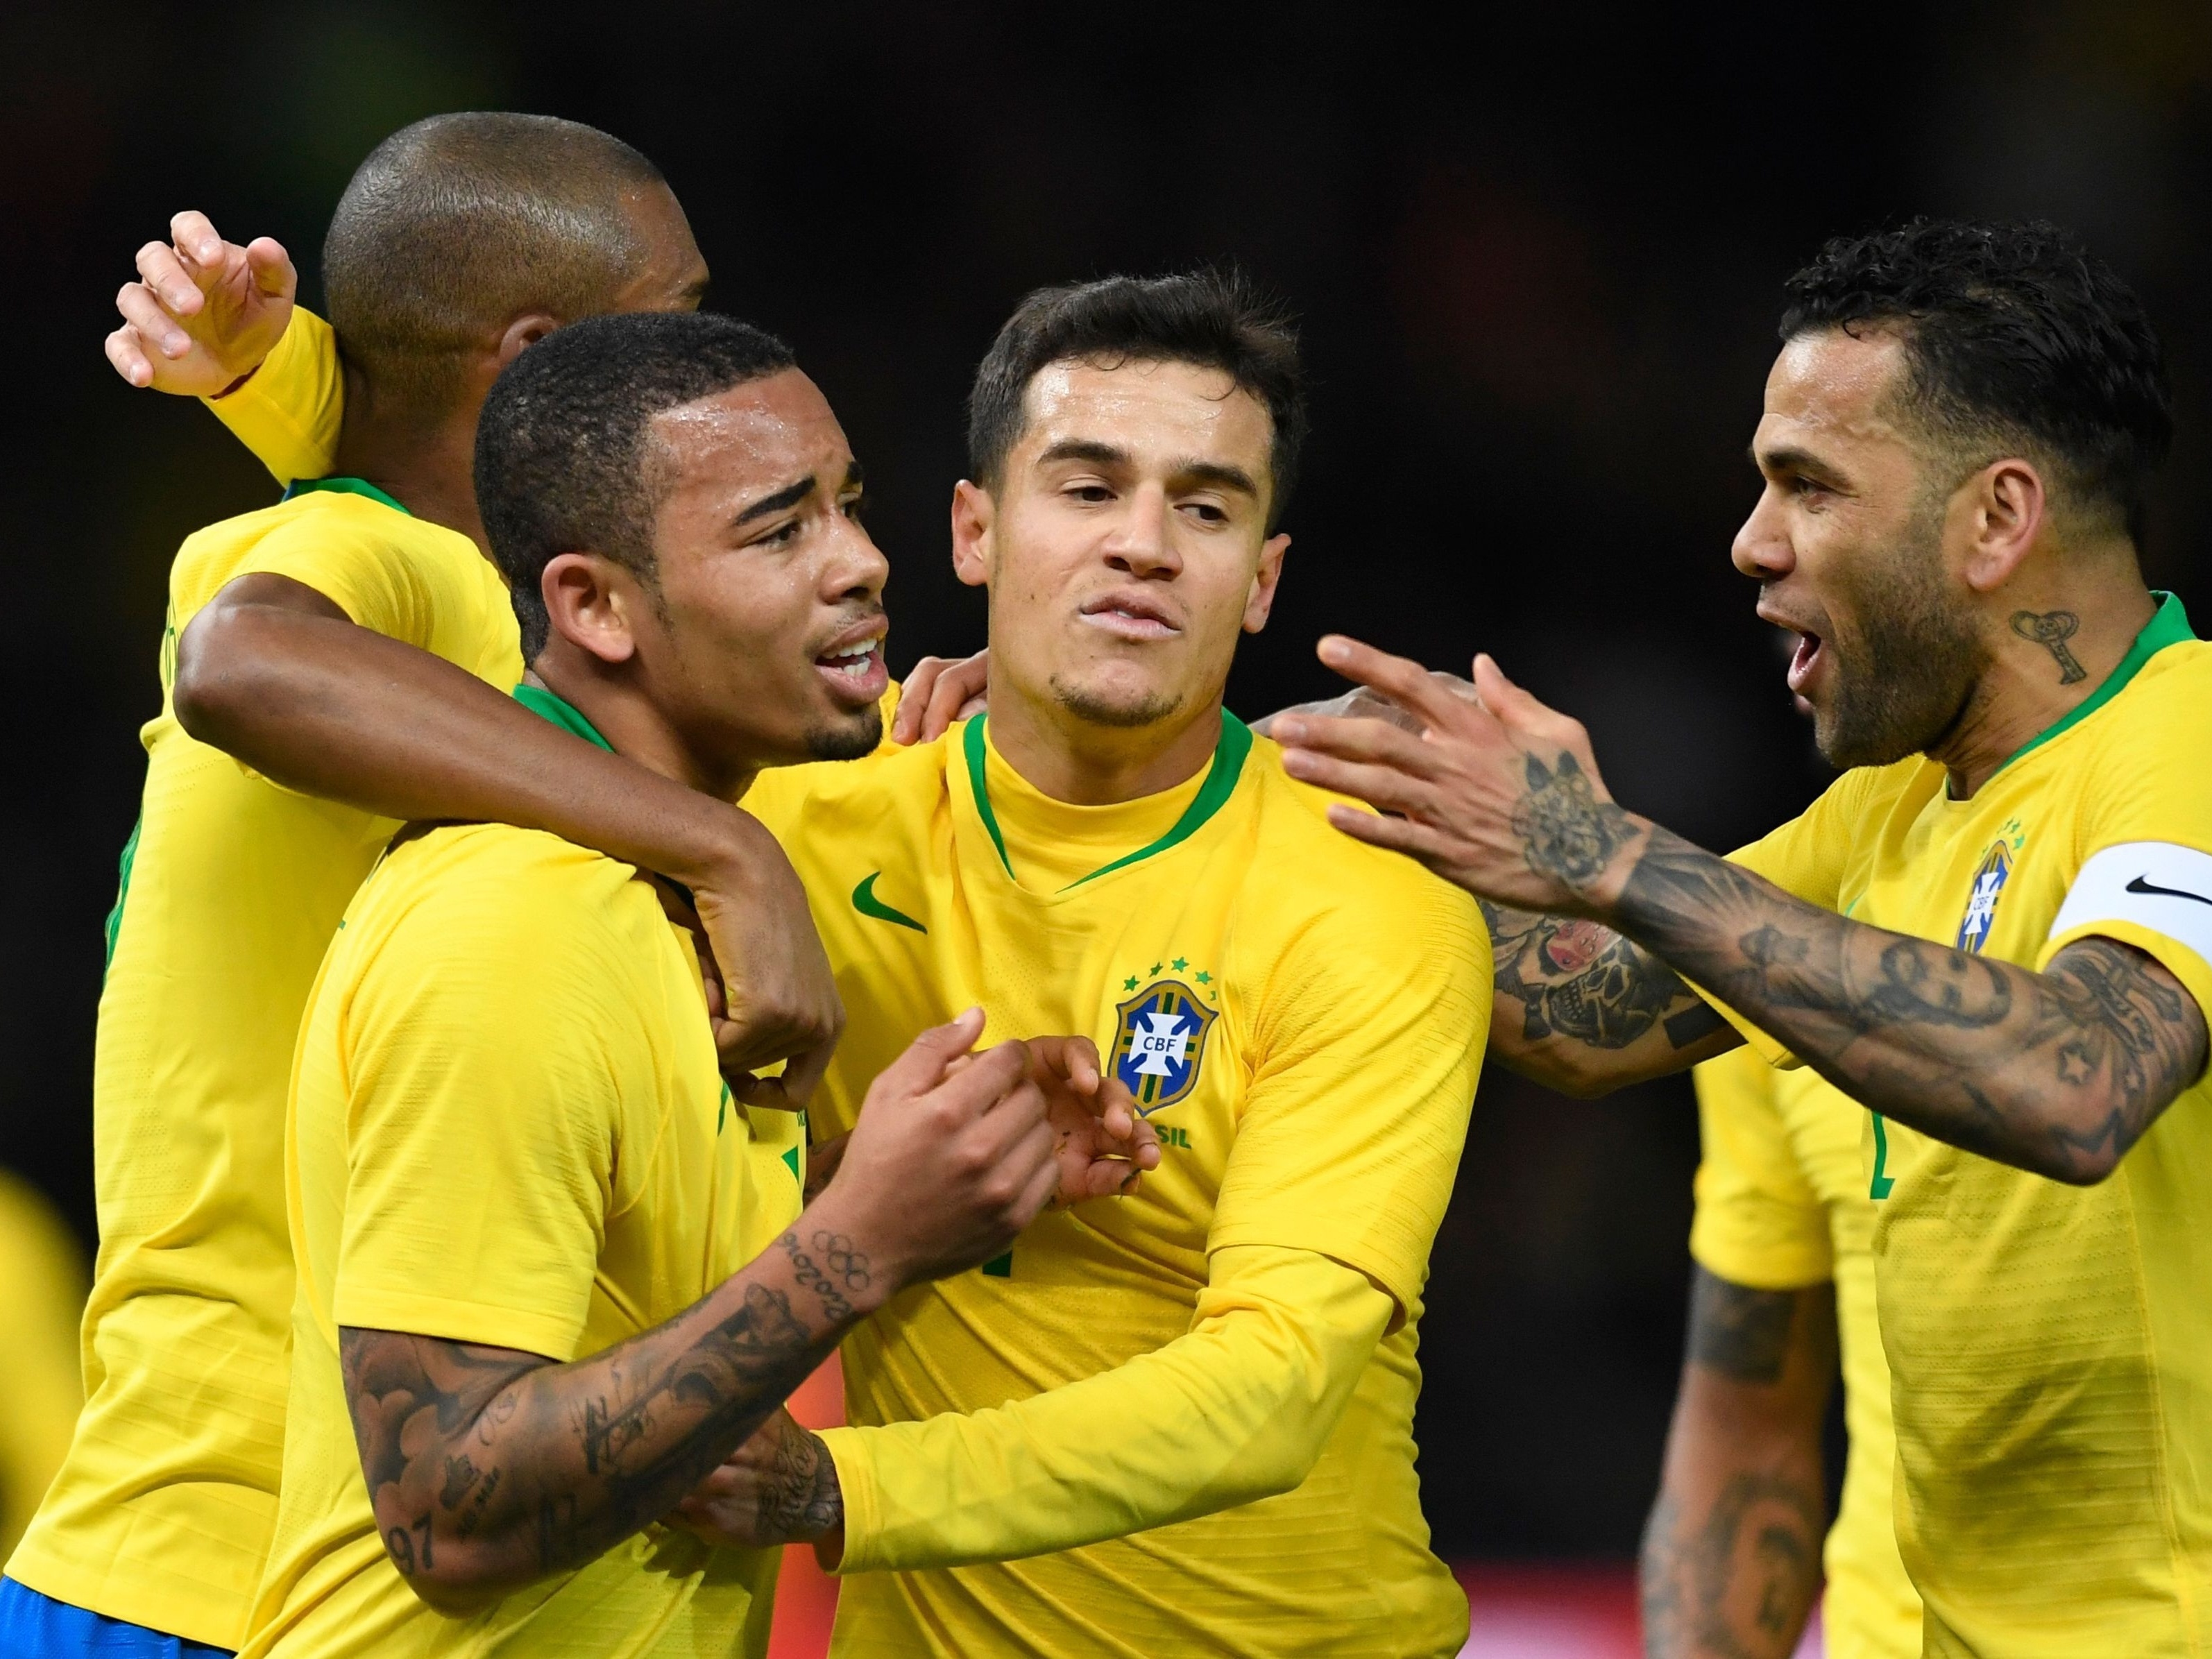 Copa do Mundo 2018: Brasil ignora 7 a 1, bate Alemanha com solidez